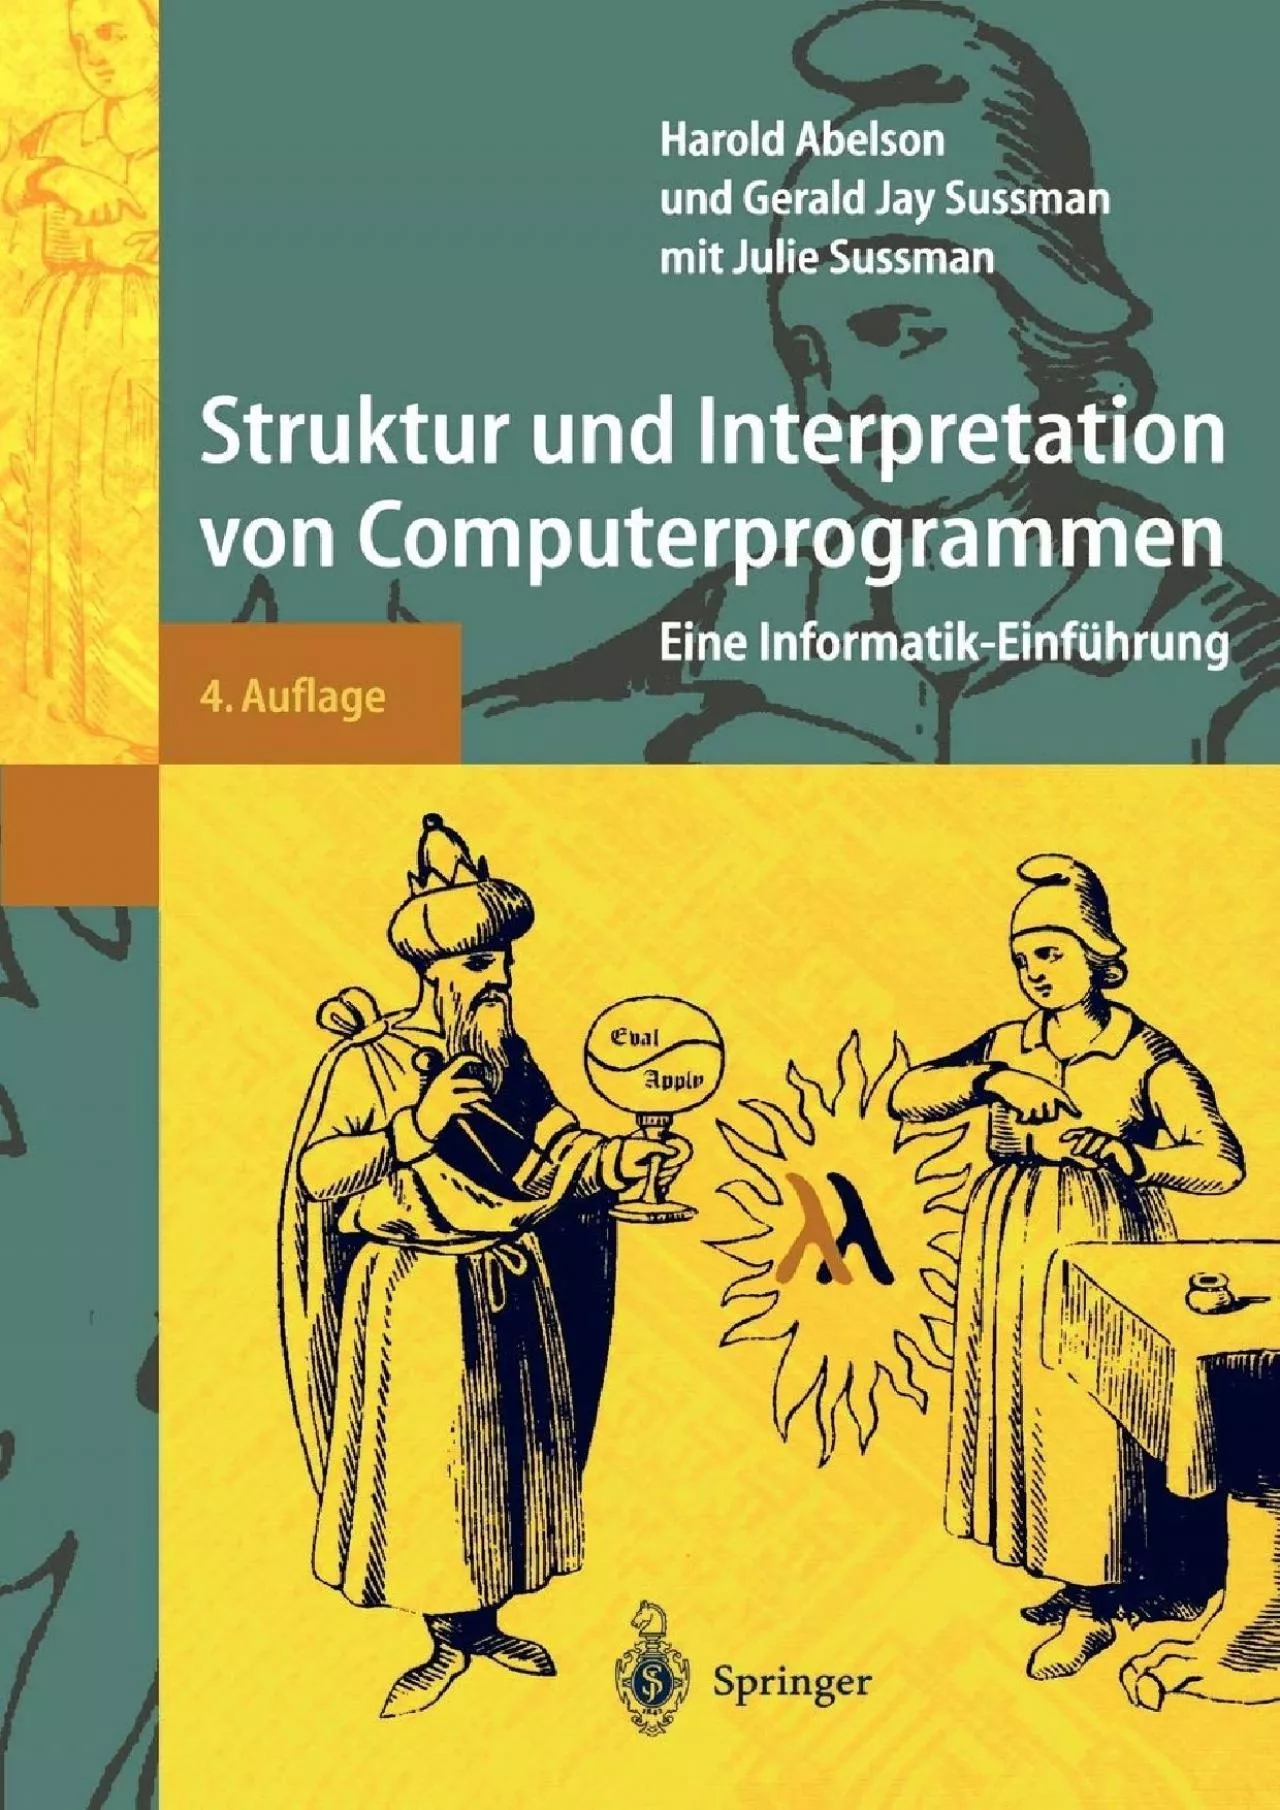 [READ]-Struktur und Interpretation von Computerprogrammen: Eine Informatik-Einführung